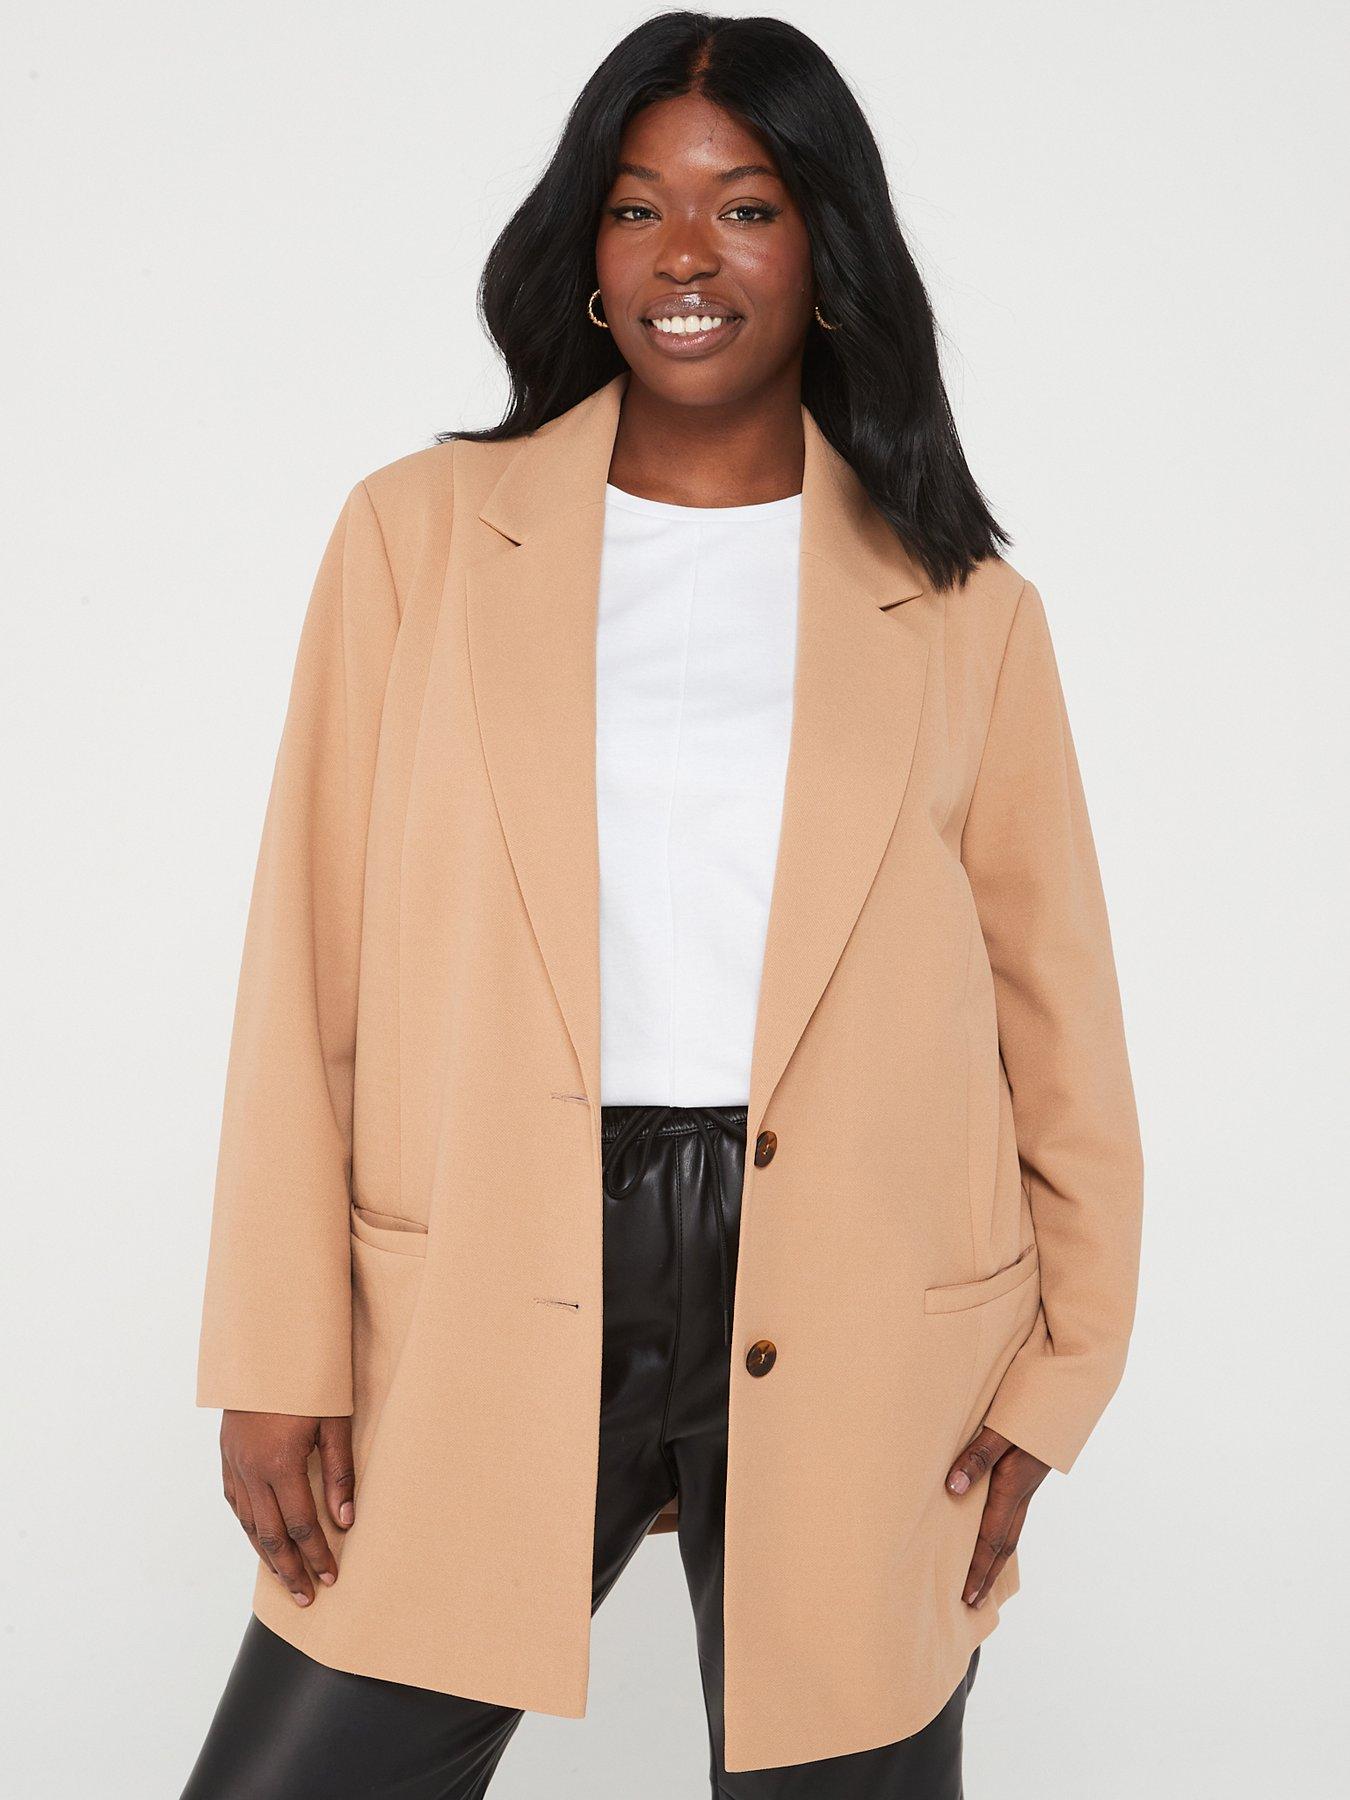 9-to-5 Stretch Work Blazer  Women's Plus Size Coats + Jackets